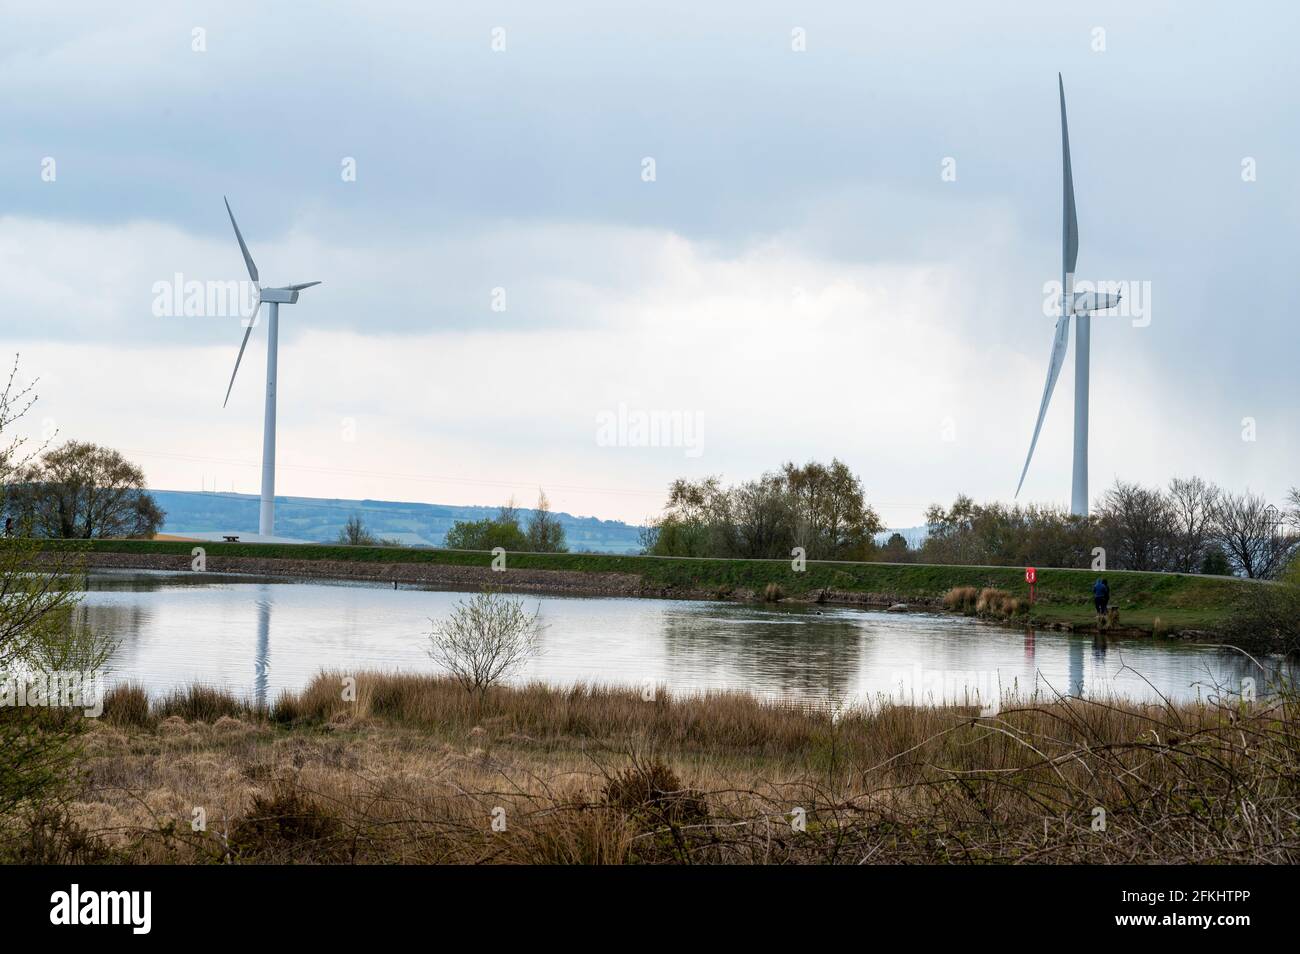 Le turbine eoliche raggiungono il cielo al Pen-y-fan Pond Country Park, vicino a Blackwood, Galles del Sud. Foto Stock